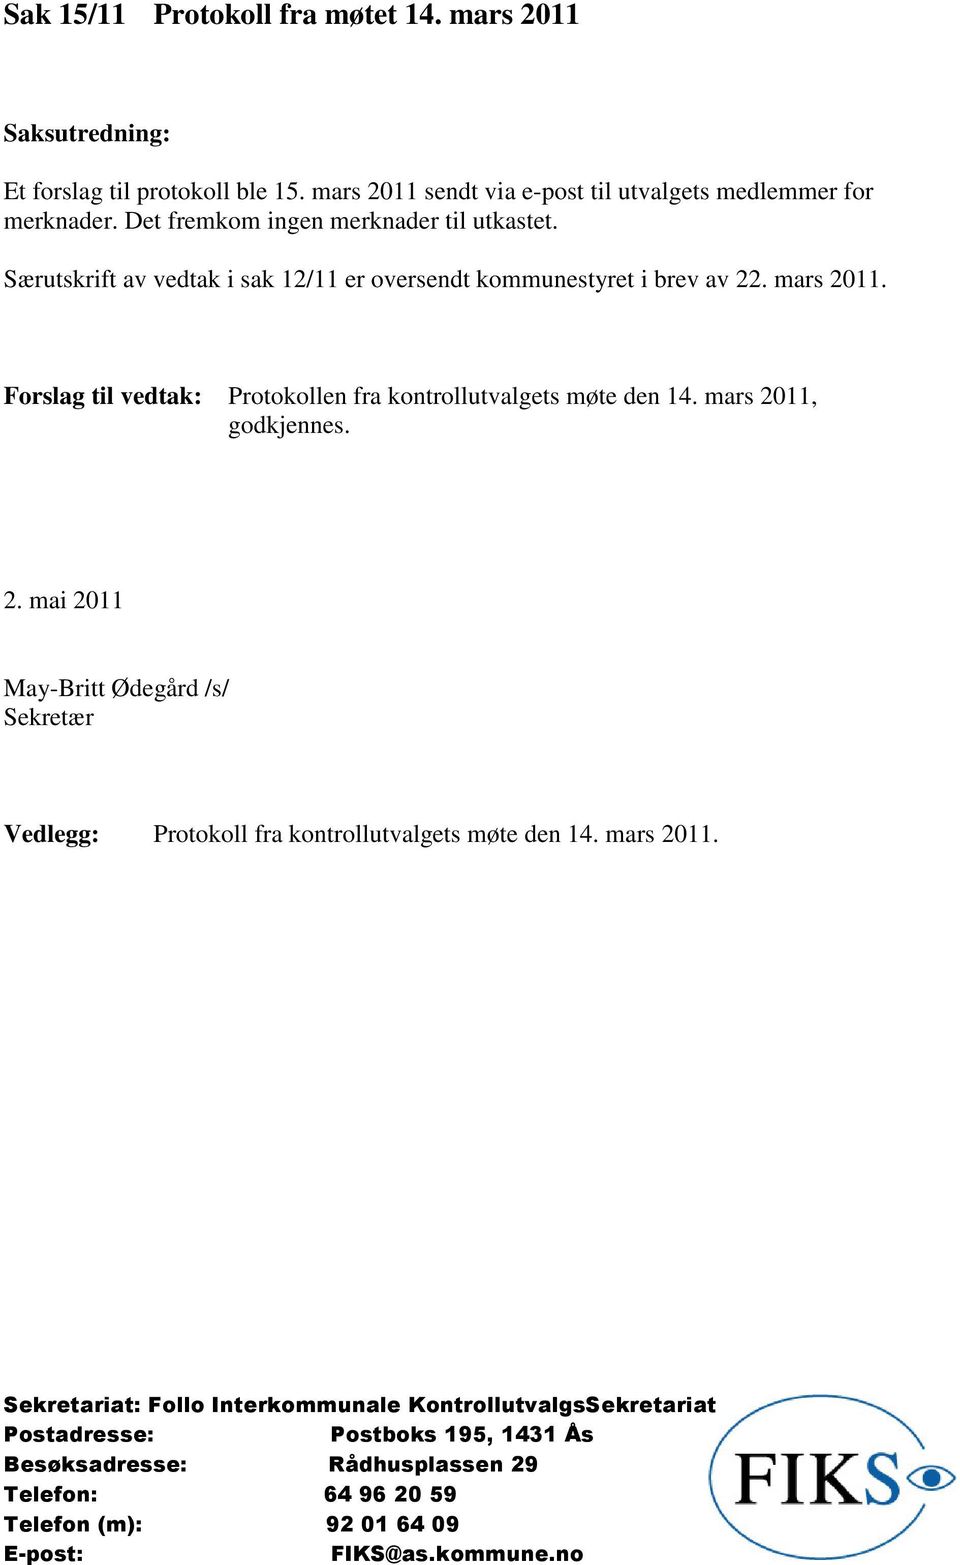 Særutskrift av vedtak i sak 12/11 er oversendt kommunestyret i brev av 22. mars 2011.